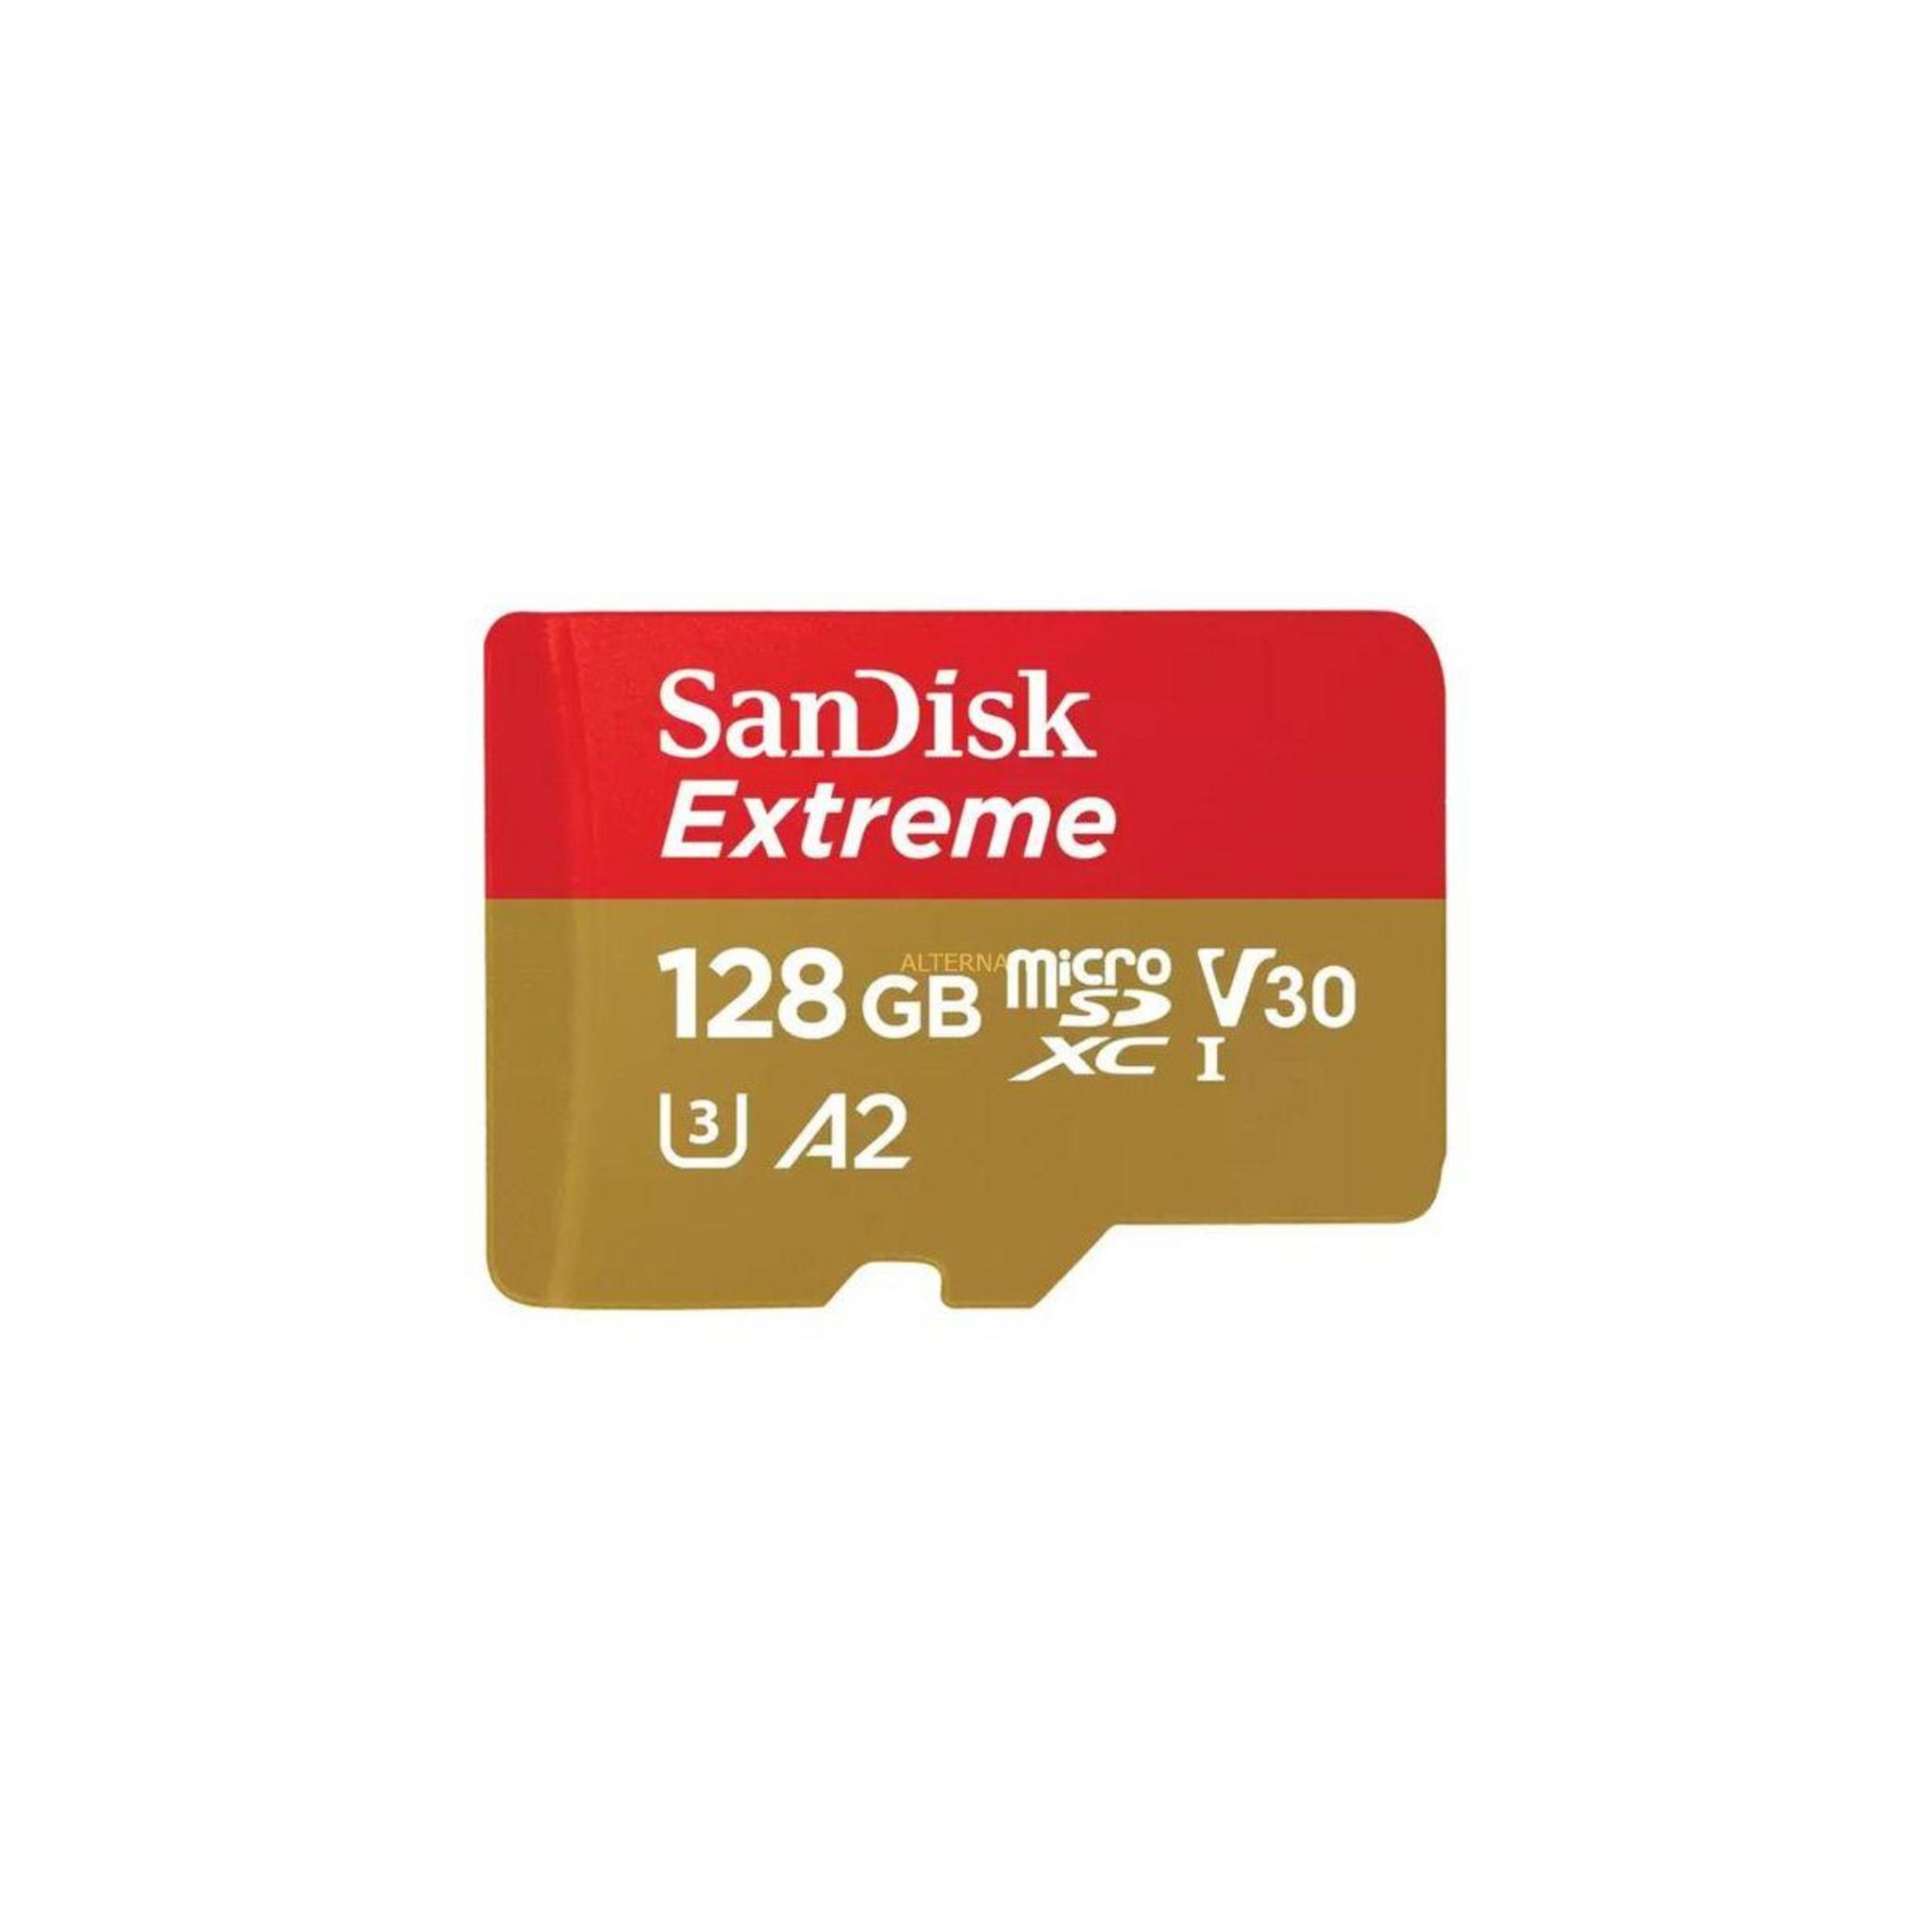 La carte microSD SanDisk Ultra 128 Go est à moins de 14 €